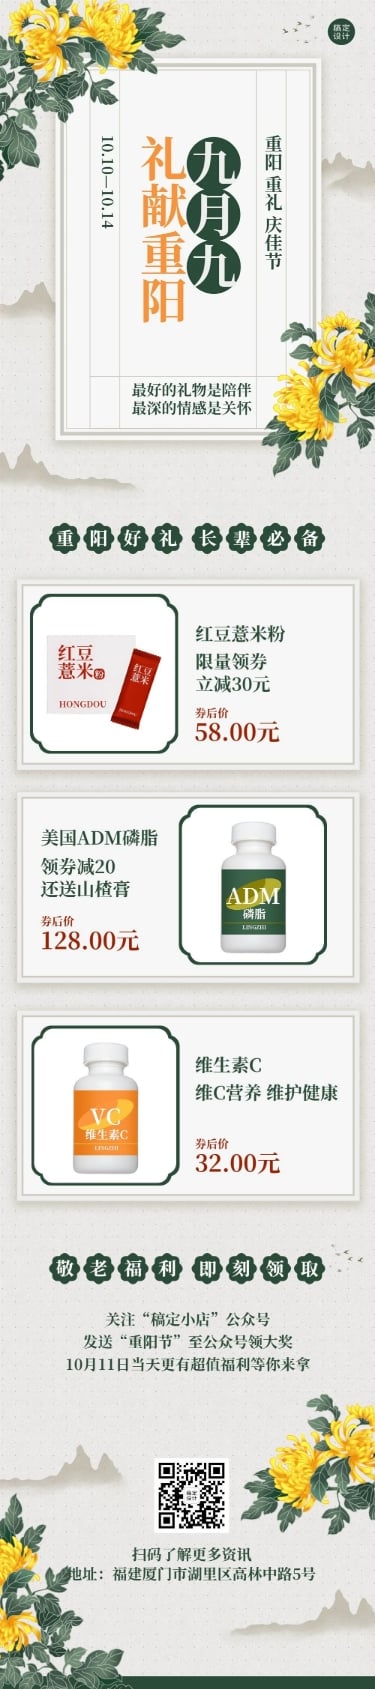 养生保健重阳节礼物清单商品促销活动中国风文章长图